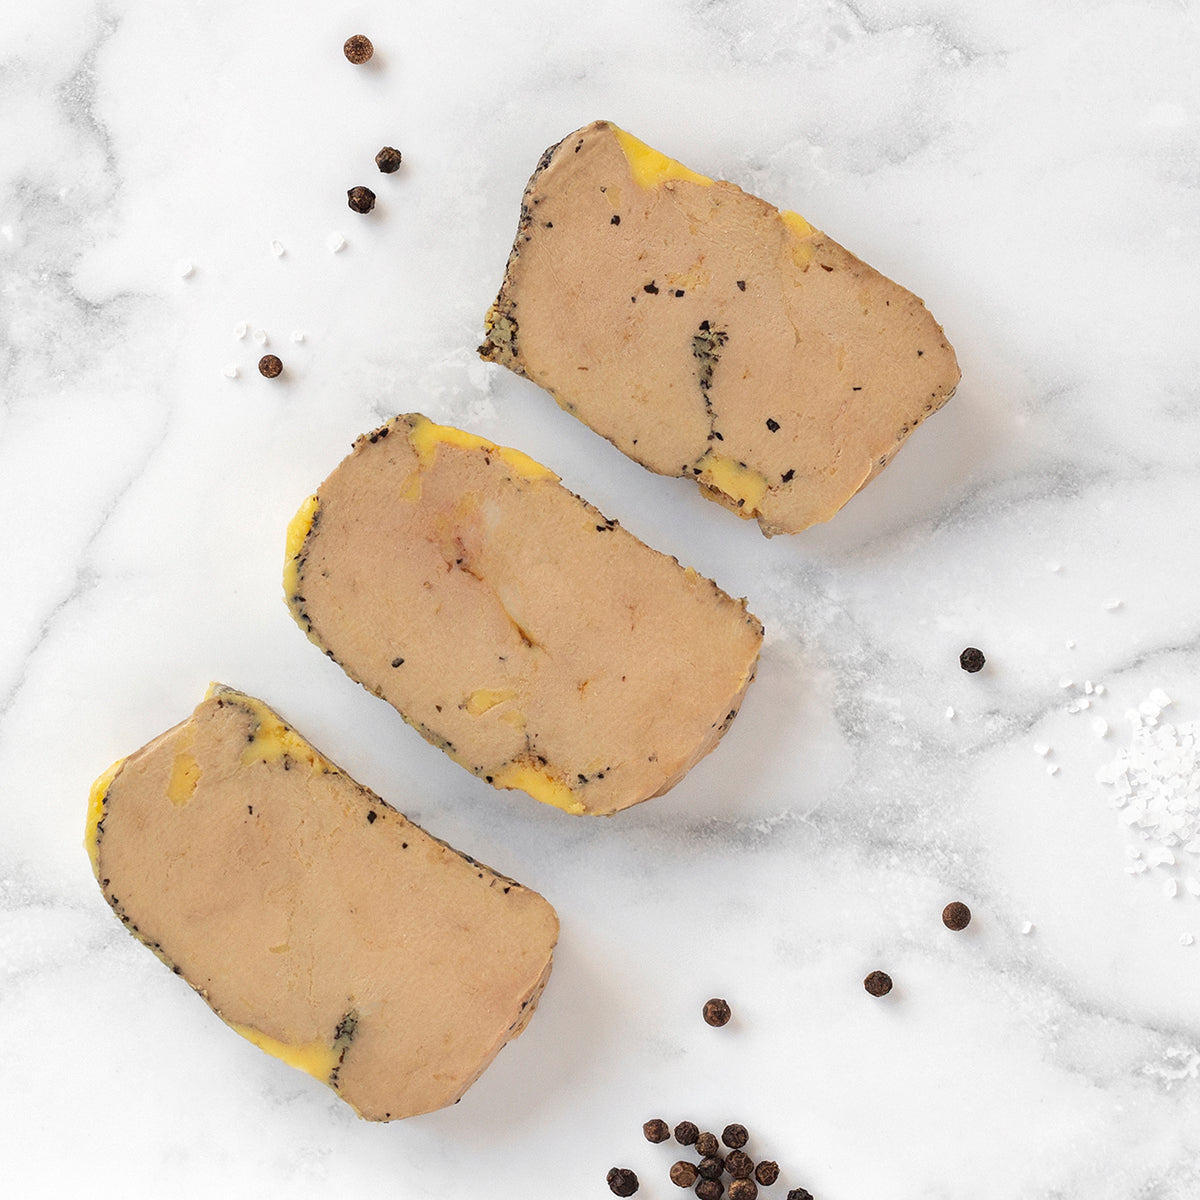 Le foie gras - Comment choisir le foie gras pour le cuisiner